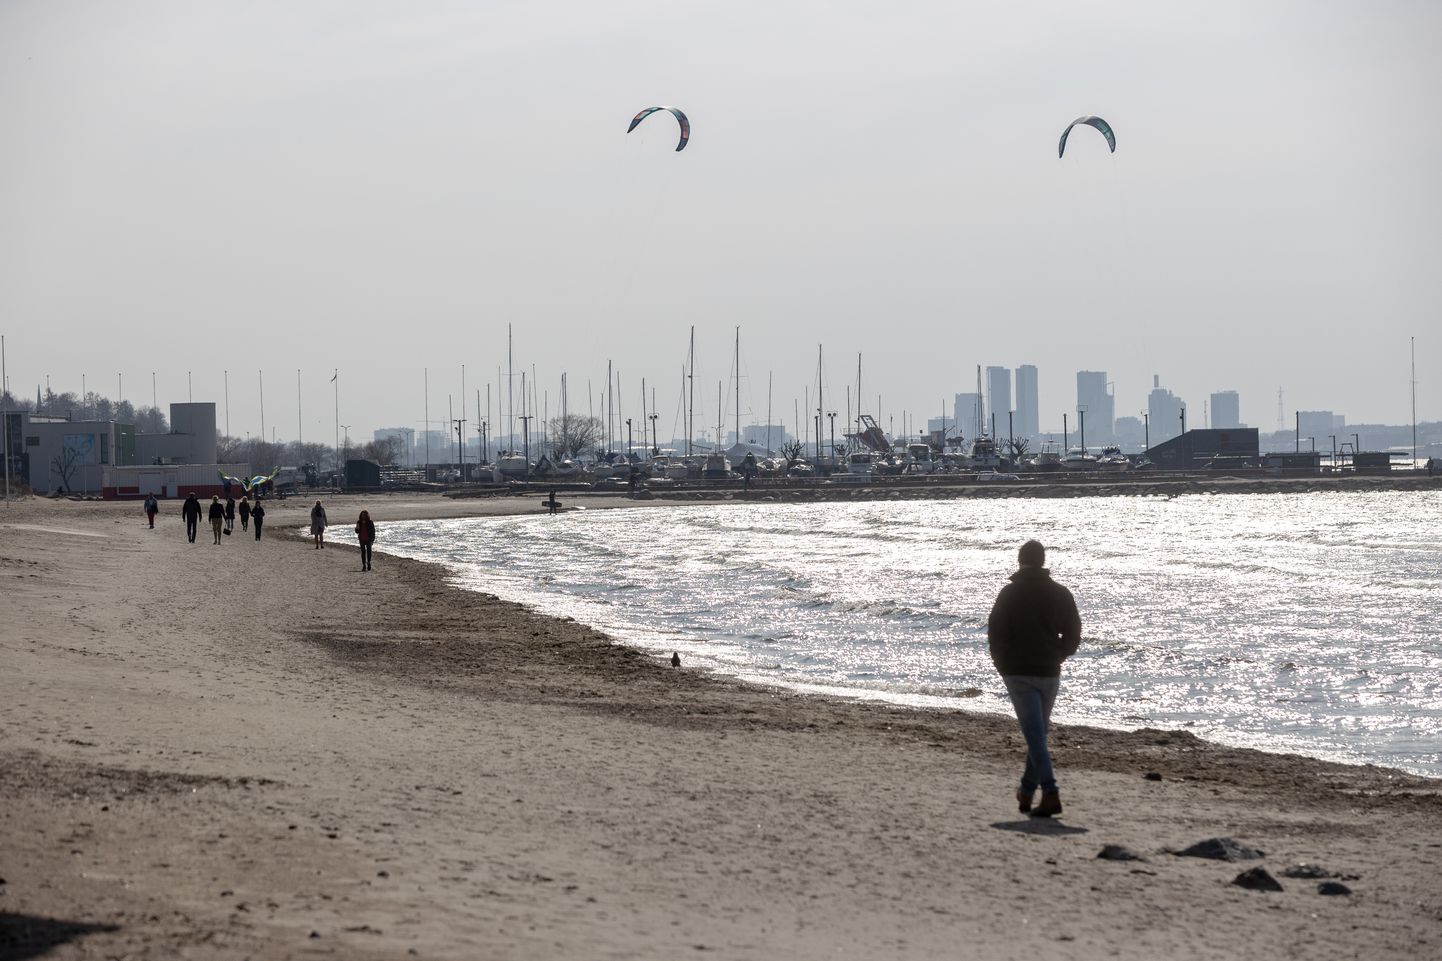 Inimesed naudivad päikselist ja sooja kevadpäeva Pirita rannas. Pilt on illustratiivne.